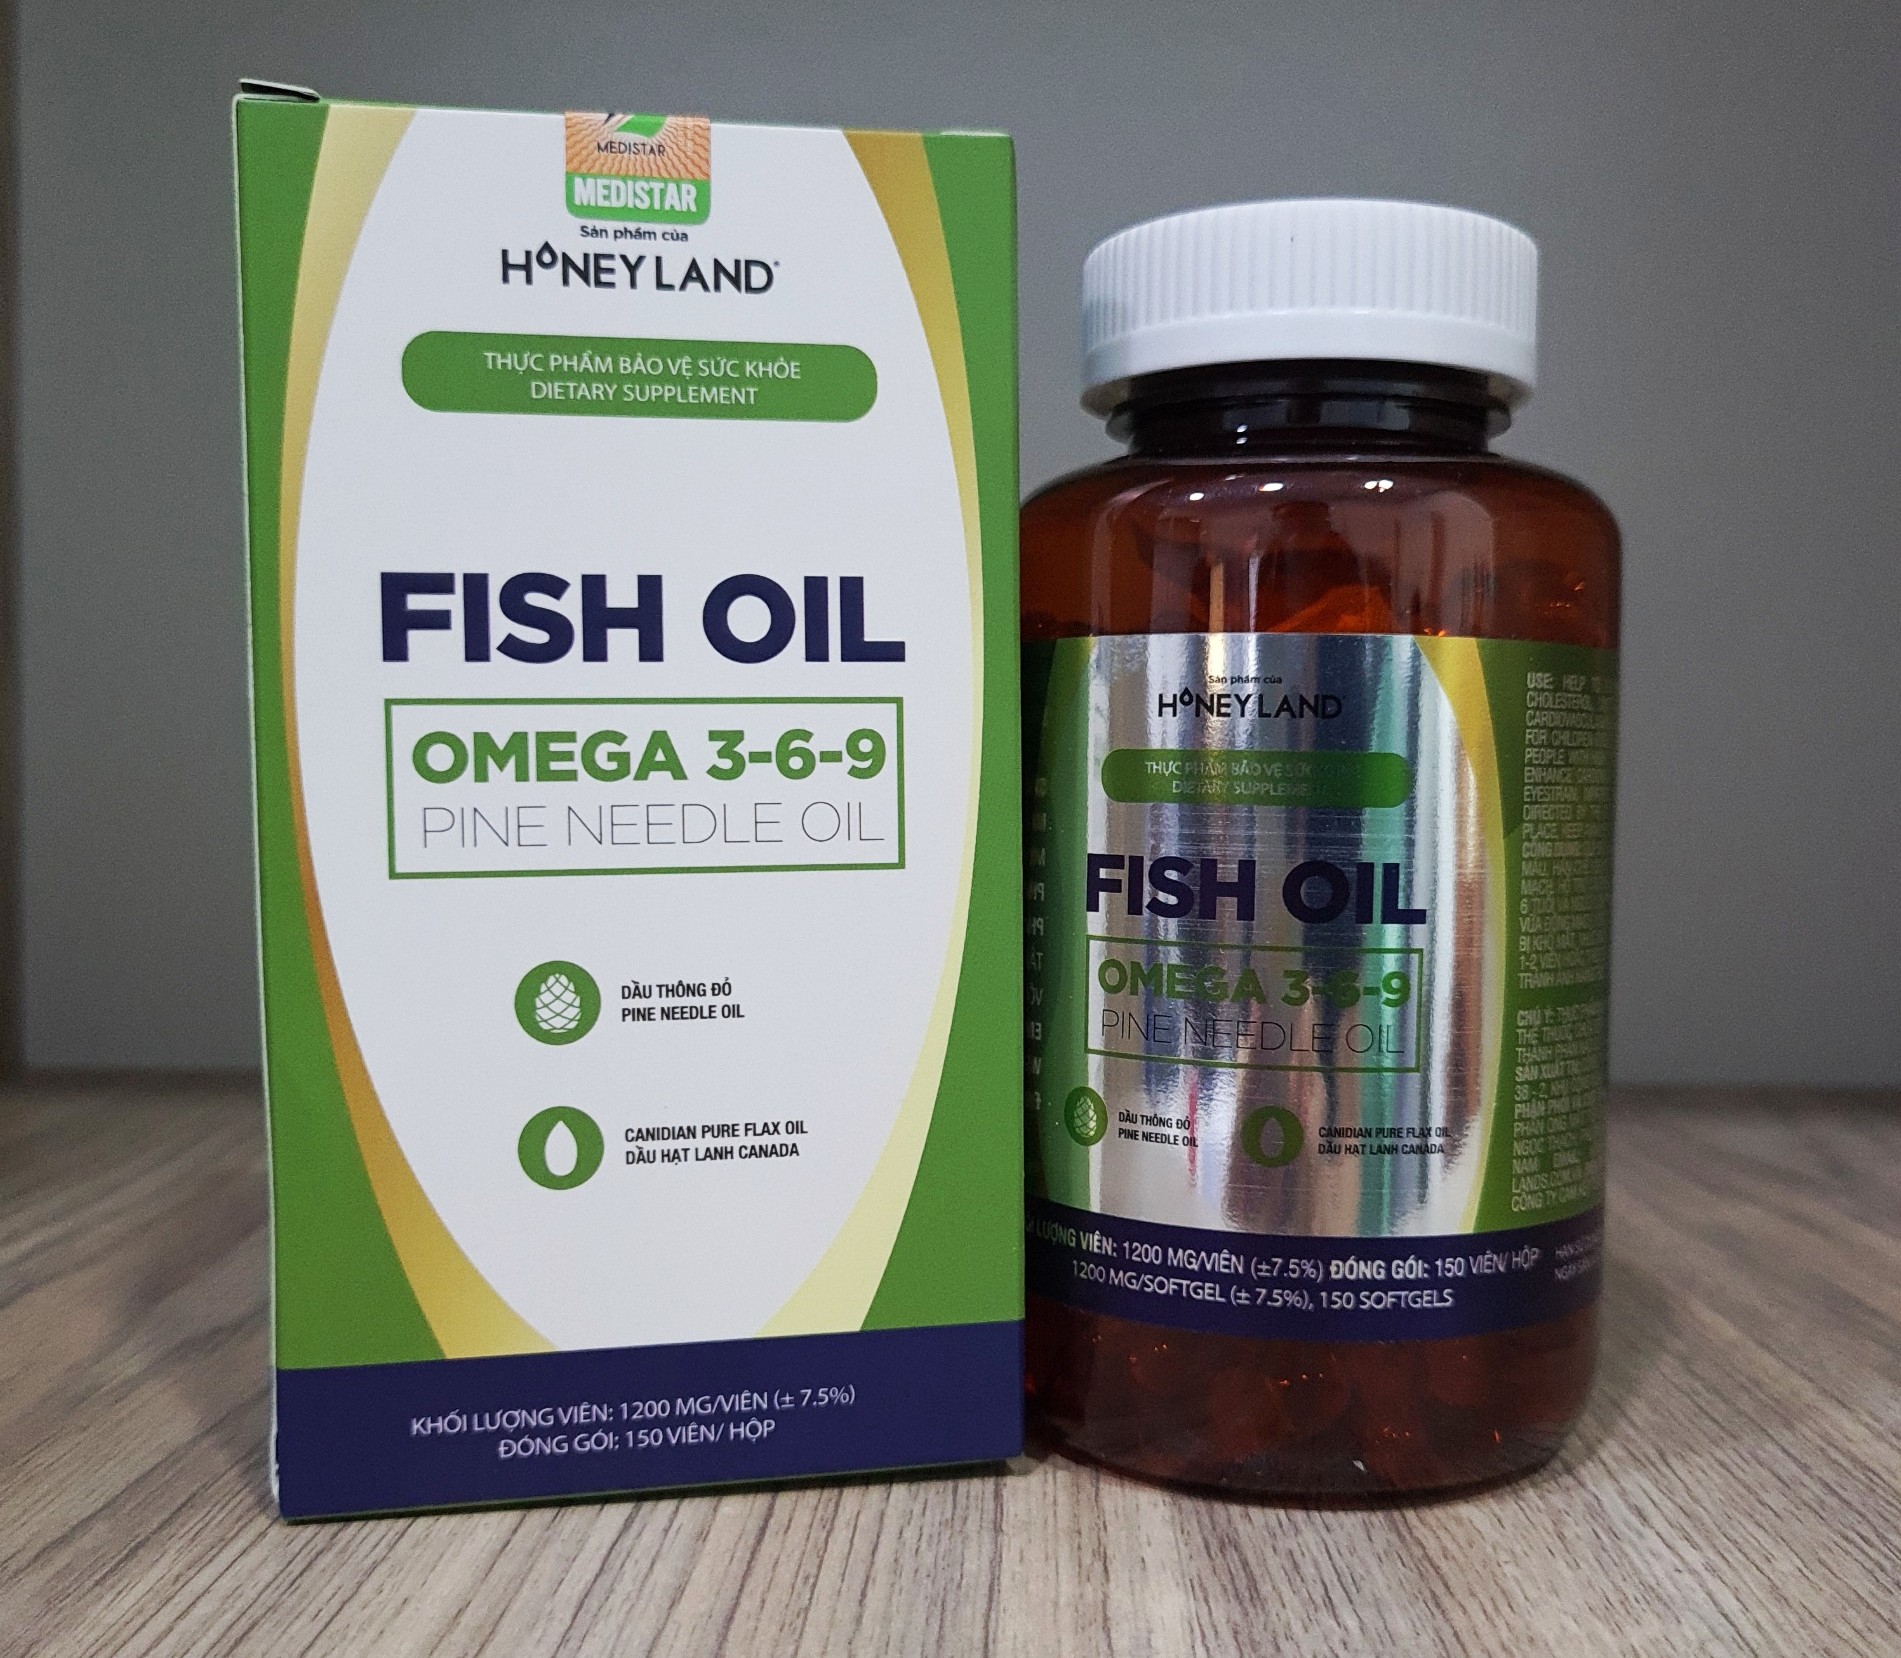 Fish Oil Omega 3-6-9 Pine Needle Oil hộp 150 viên